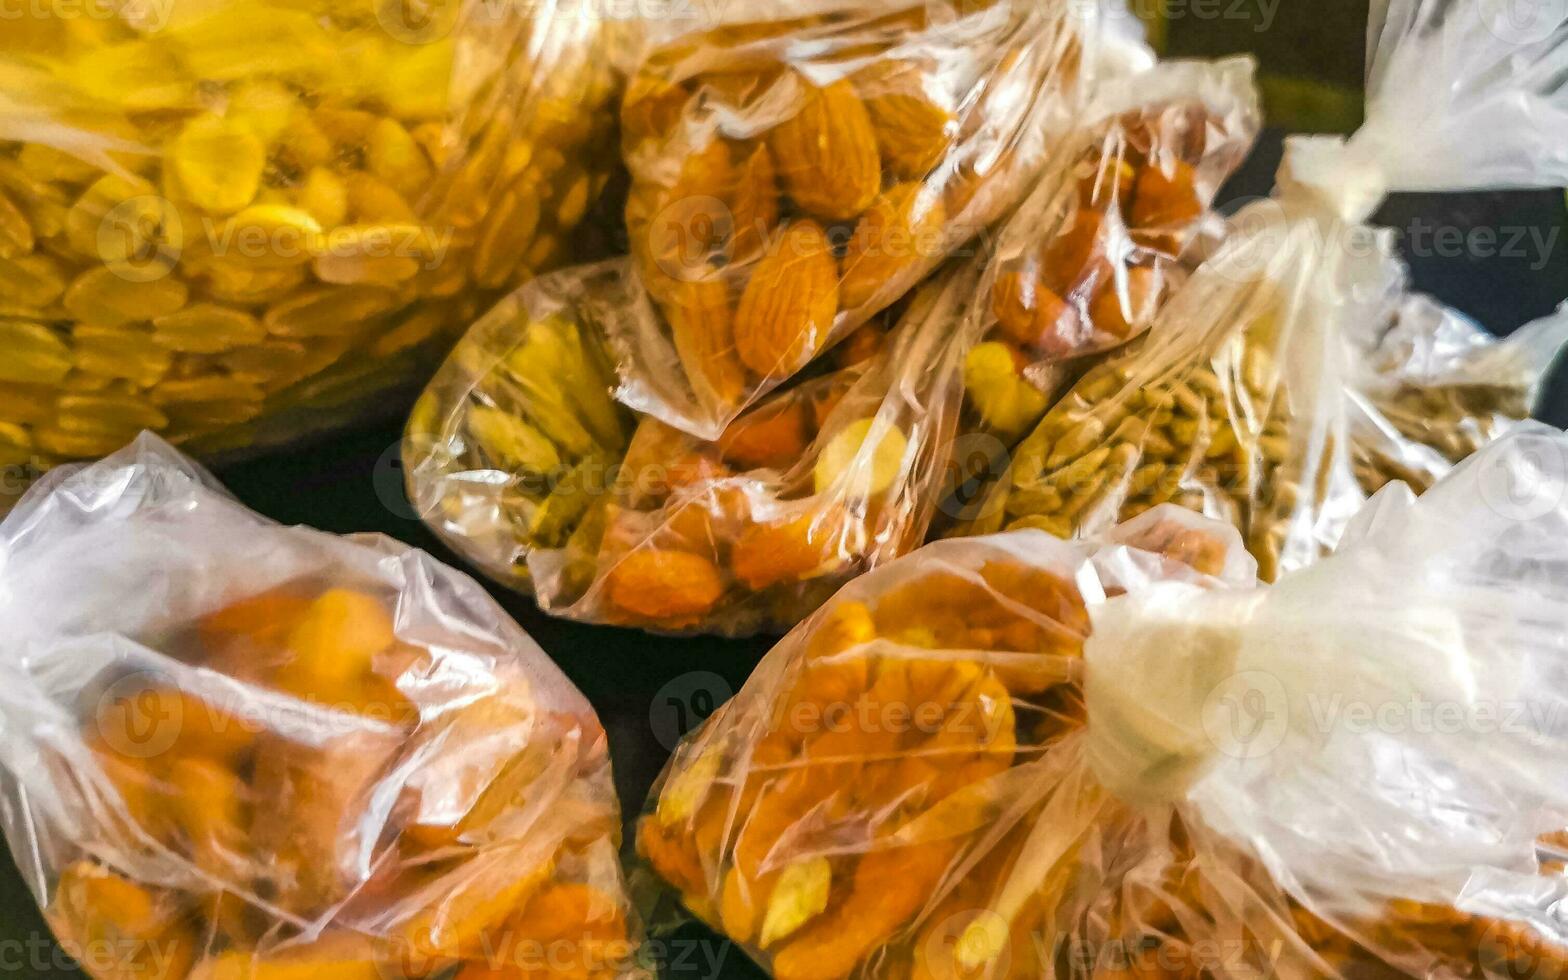 divers noten in zak pecannoten pinda's pompoen zonnebloem zaden amandelen. foto